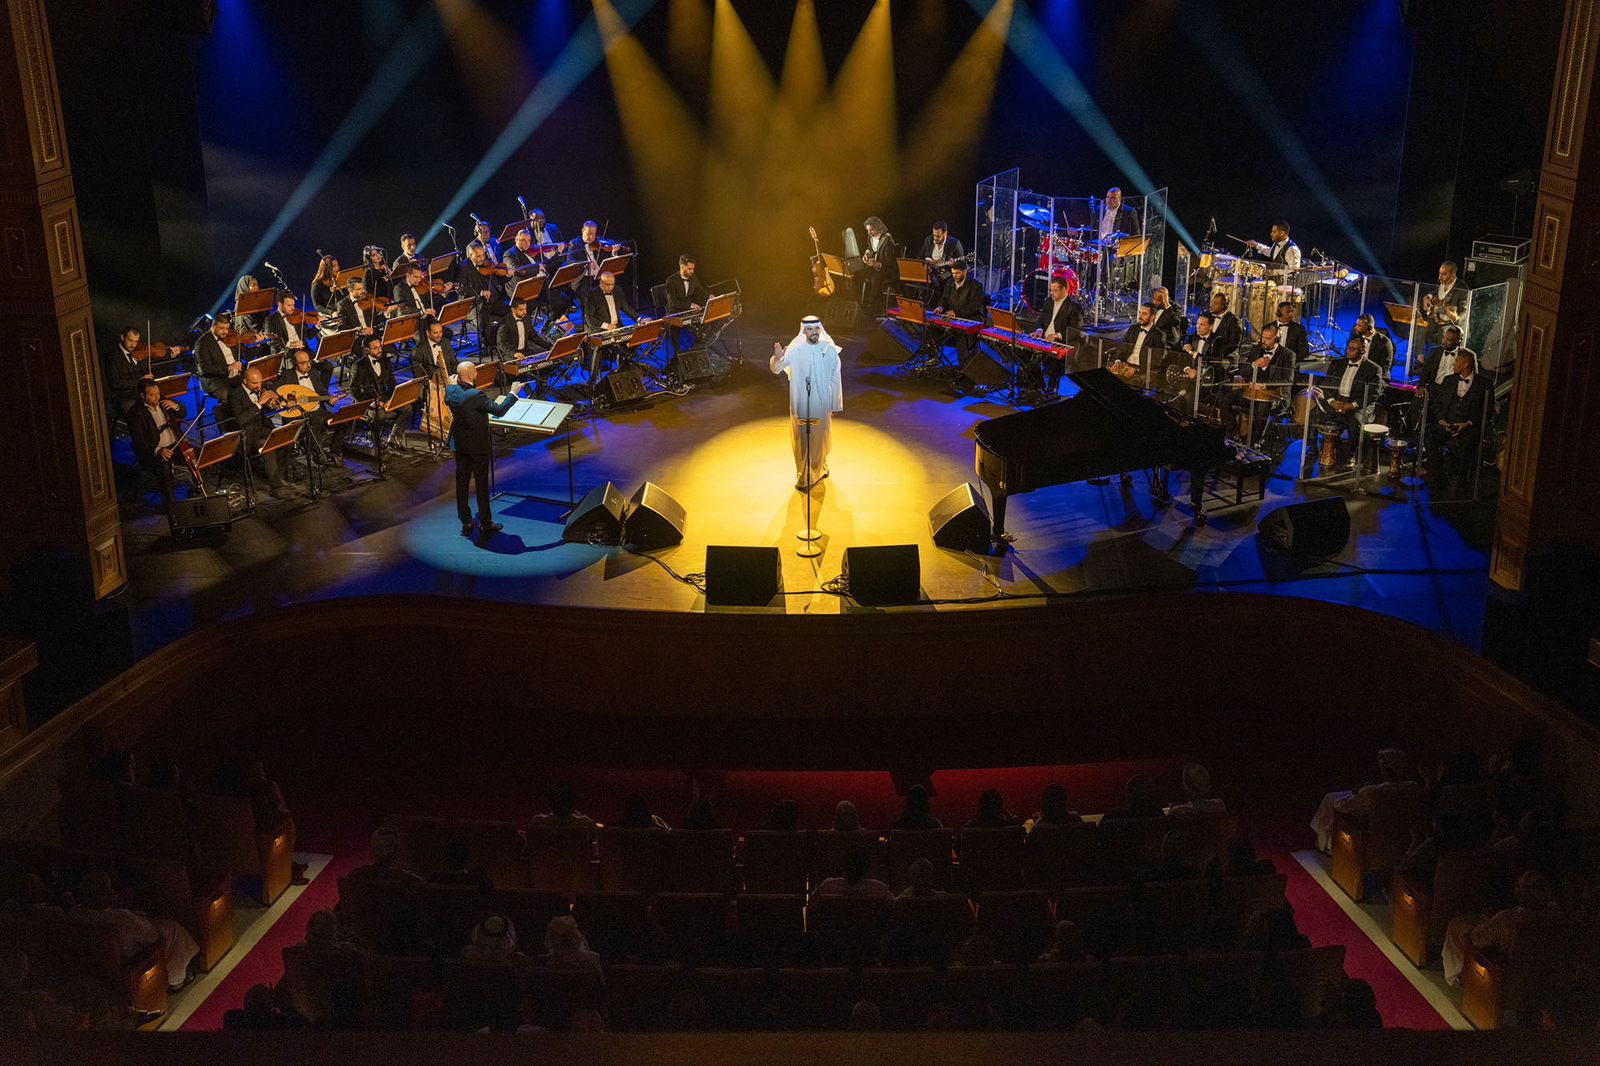 ثلاث ليالي غنائية لـ حسين الجسمي من "ألف ليلة وليلة" تخلدت في ذاكرة الجمهور العُماني بدار الأوبرا مسقط 3